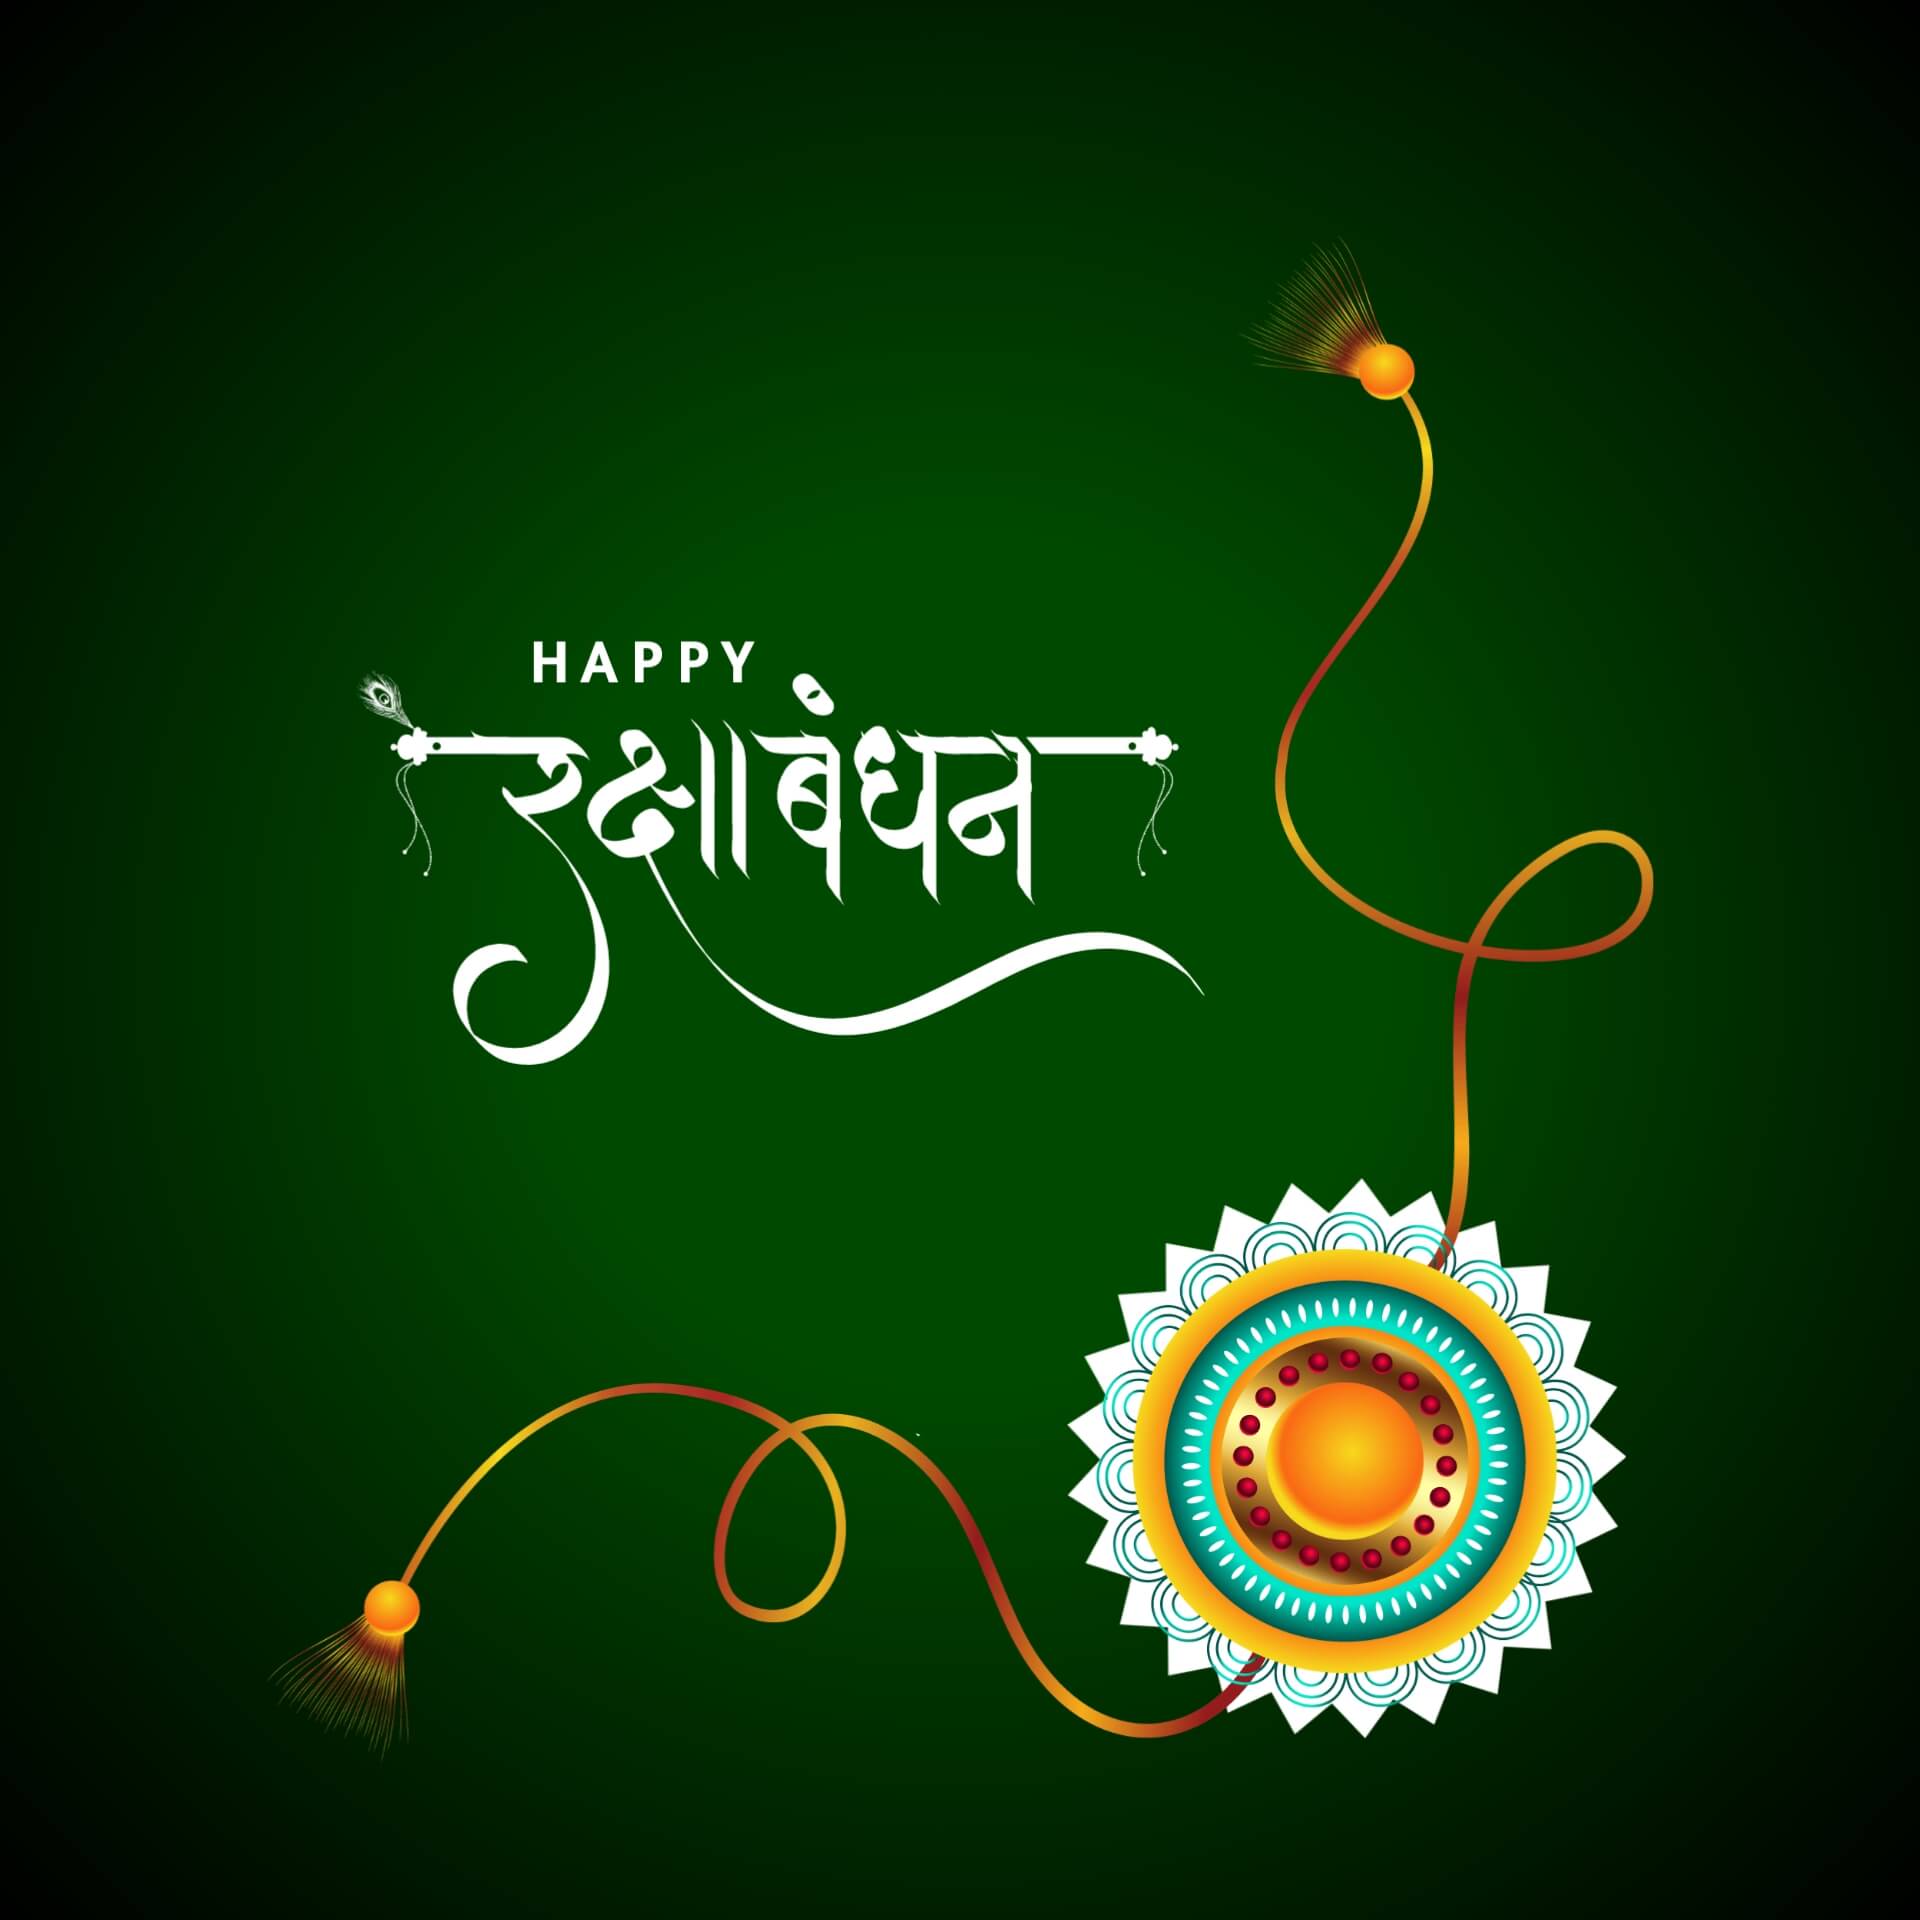 Hindi Raksha Bandhan Image with Green Background